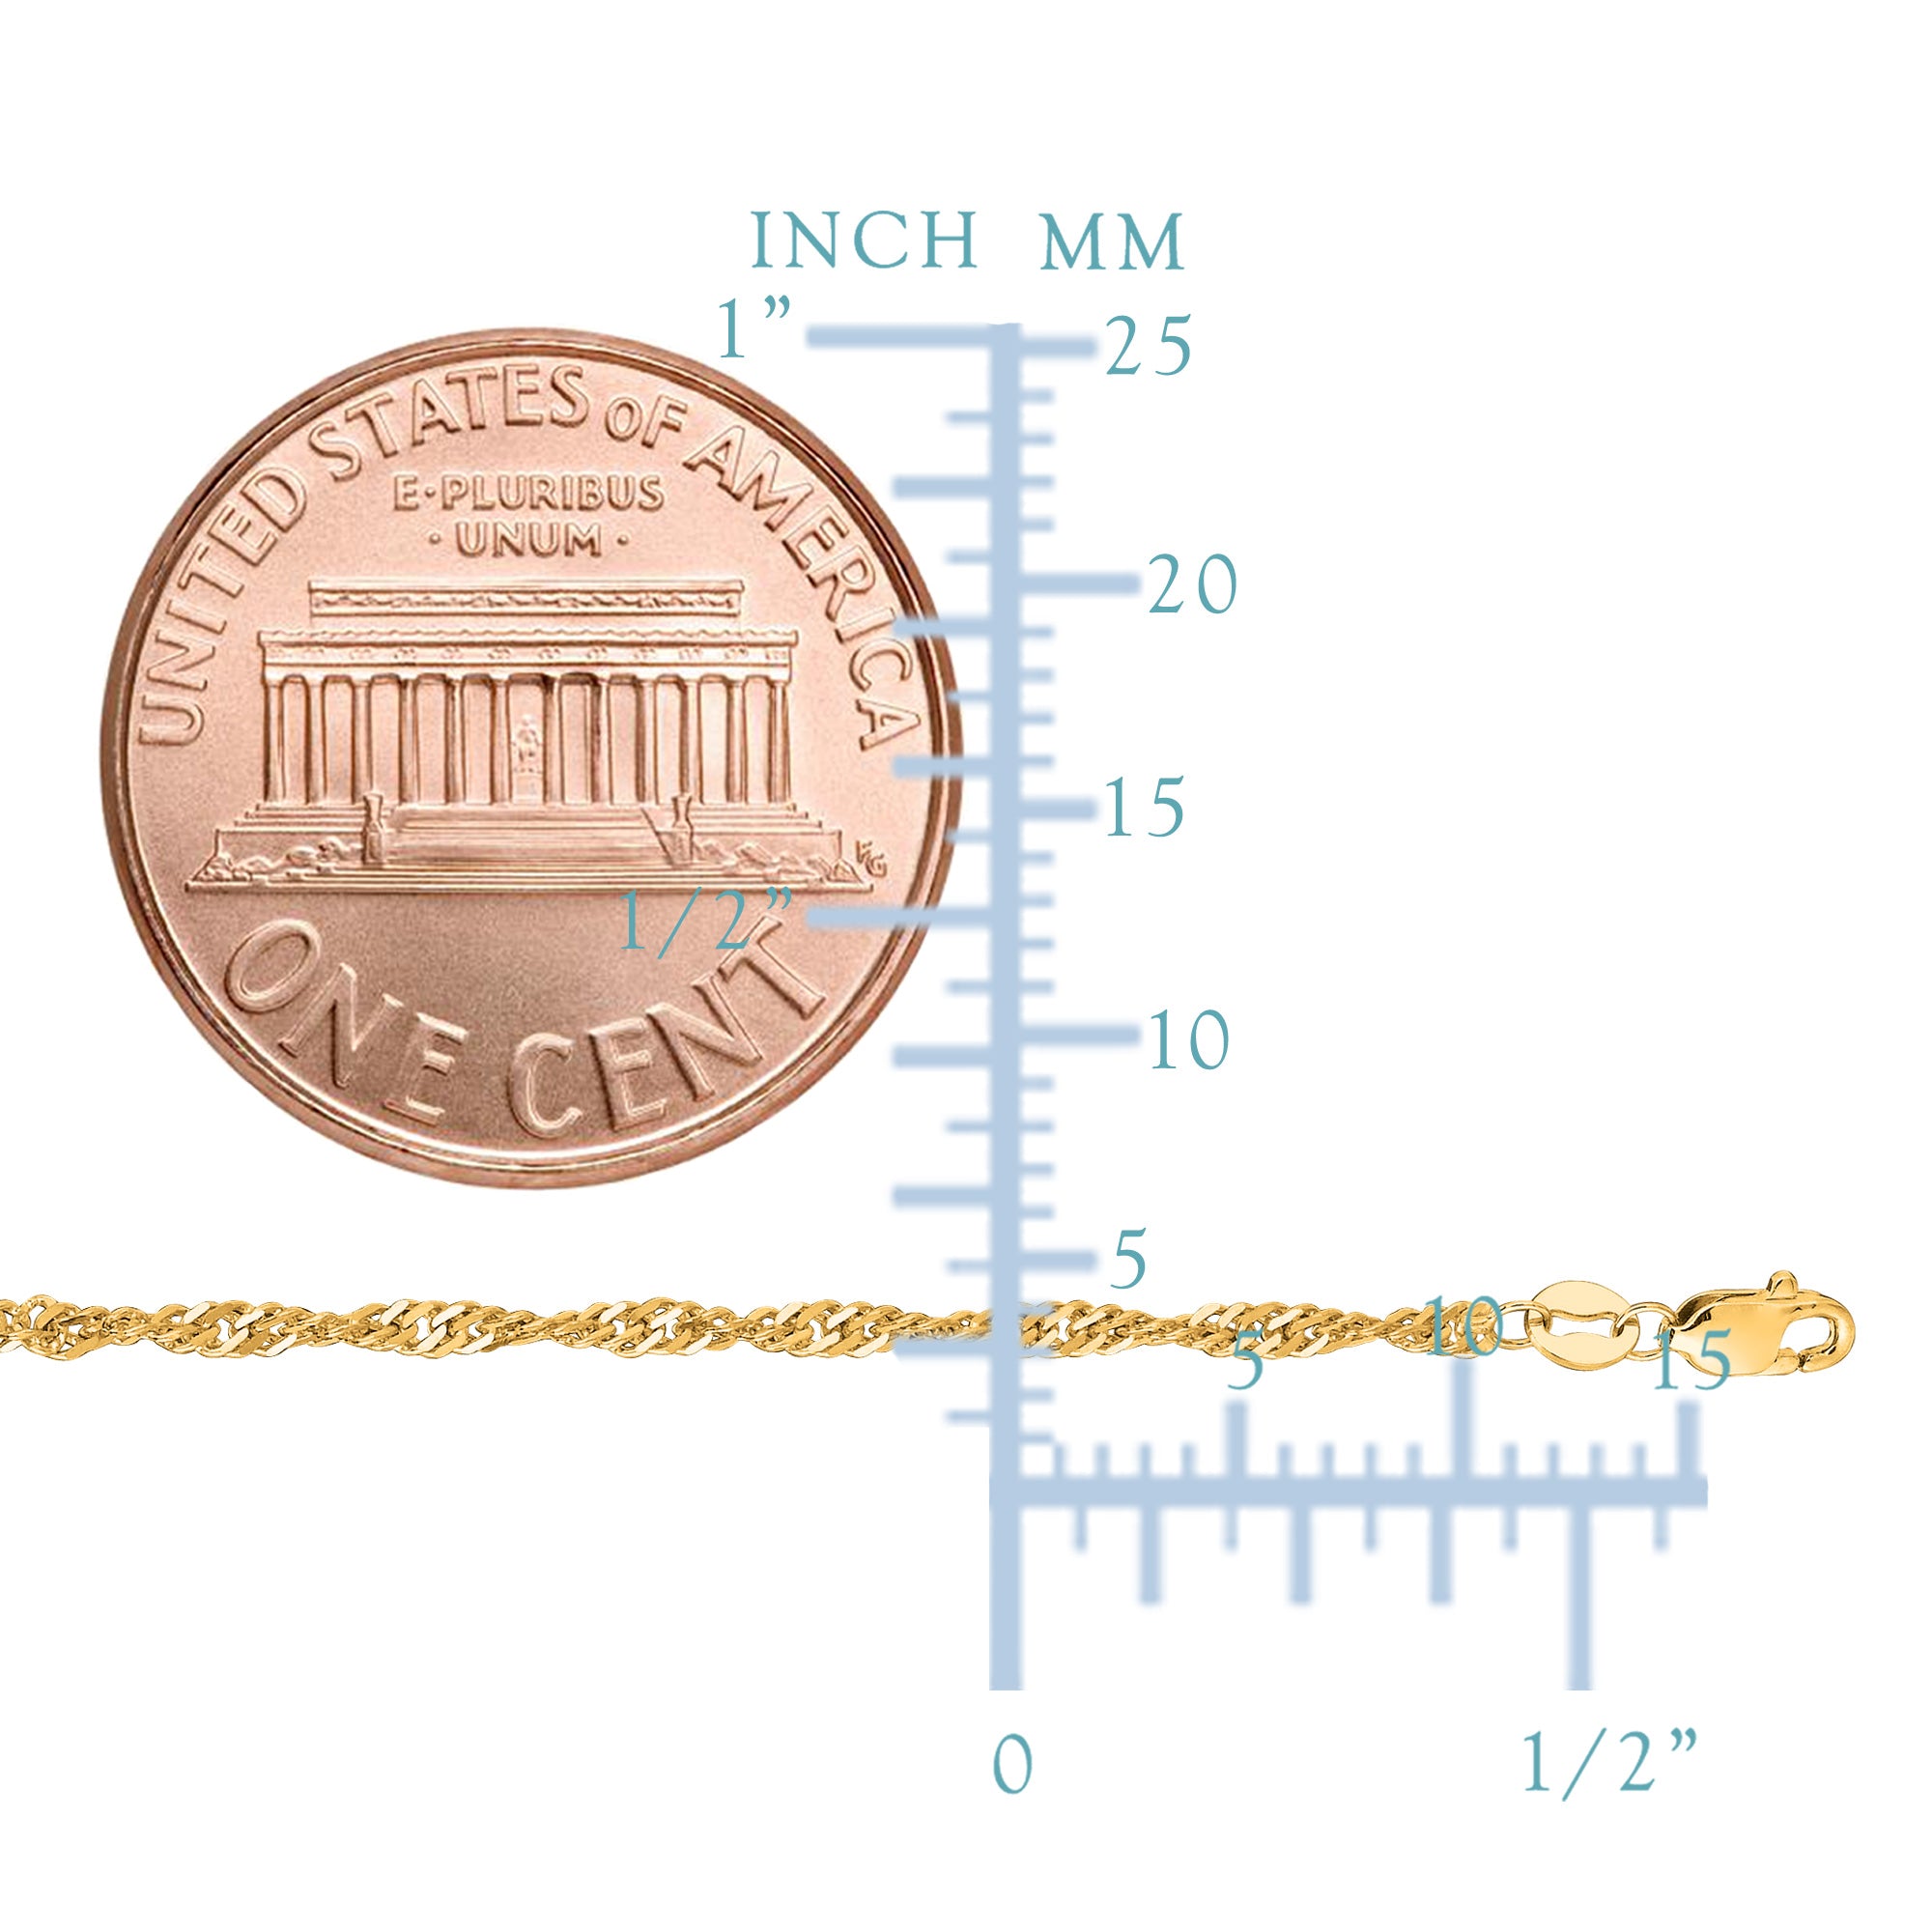 10 k gult guld Singapore Chain Halsband, 1,7 mm fina designersmycken för män och kvinnor